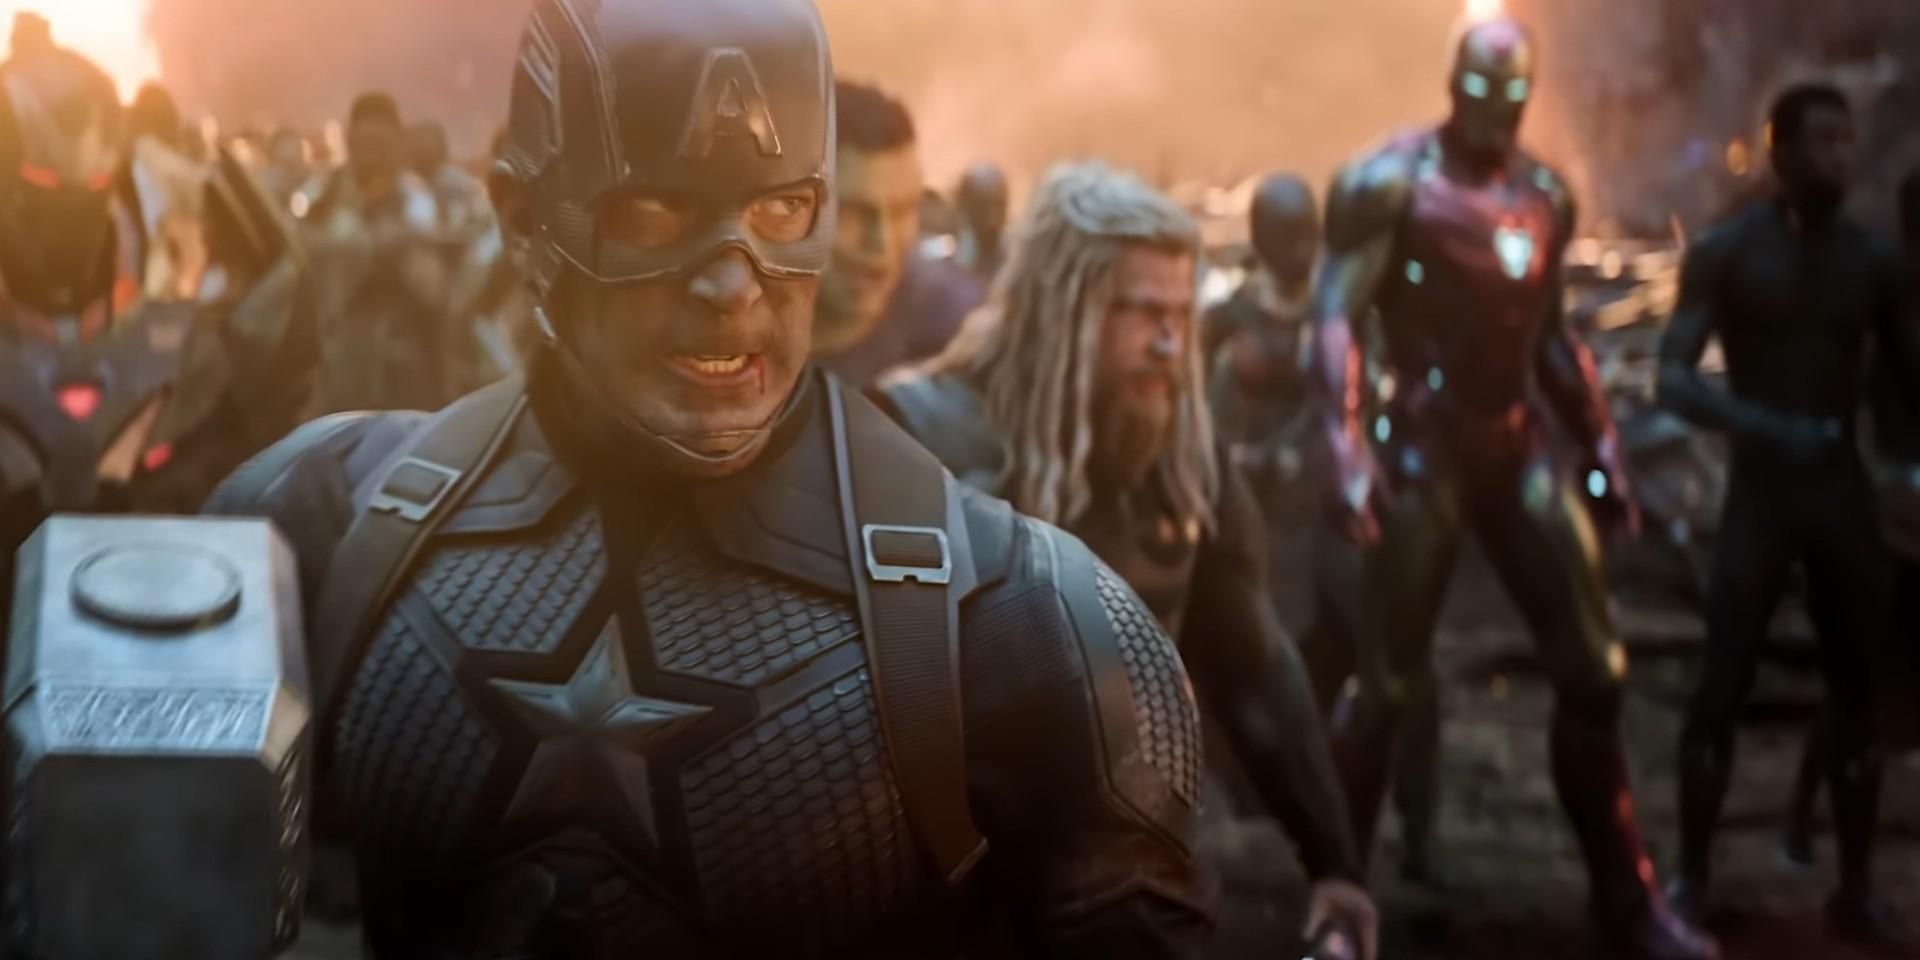 Captain America in front of The Avengers in Avengers: Endgame